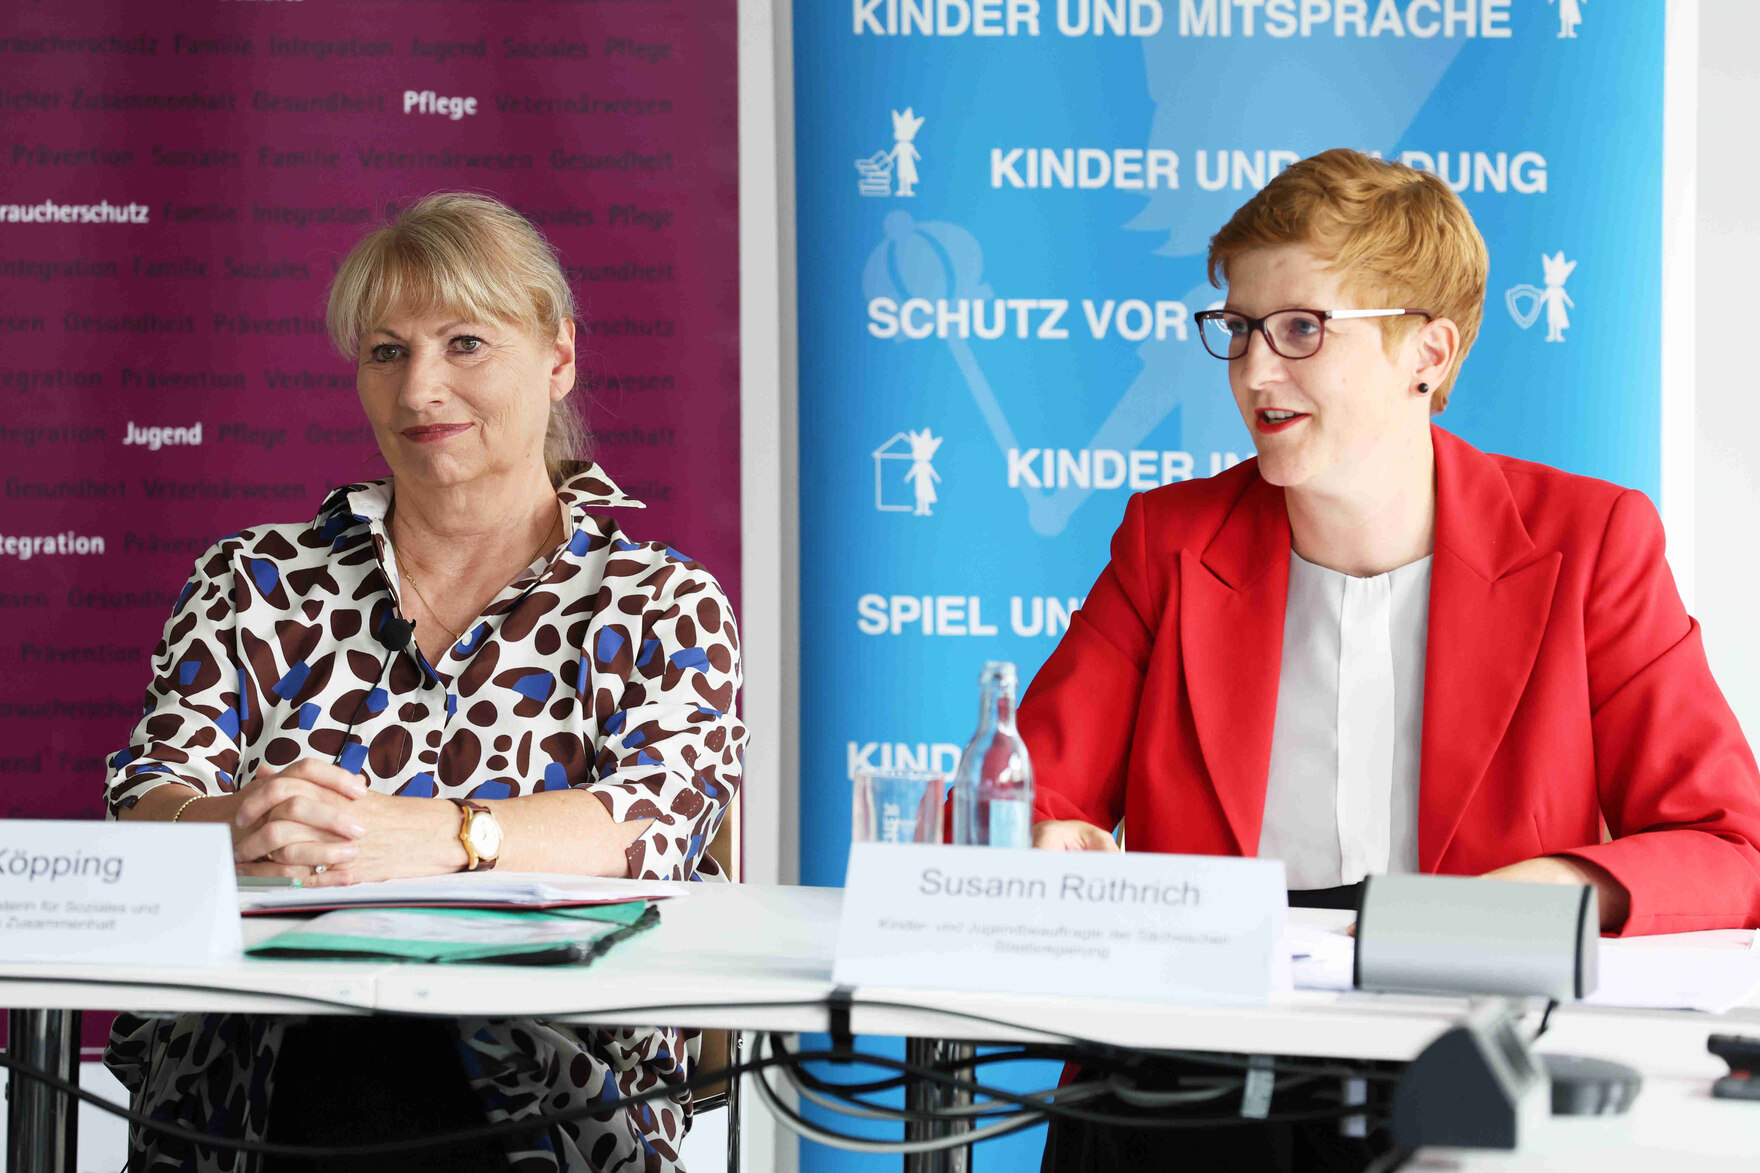 Staatsministerin Köpping und Kinderbeauftragte Rüthrich sprechen bei der Pressekonferenz